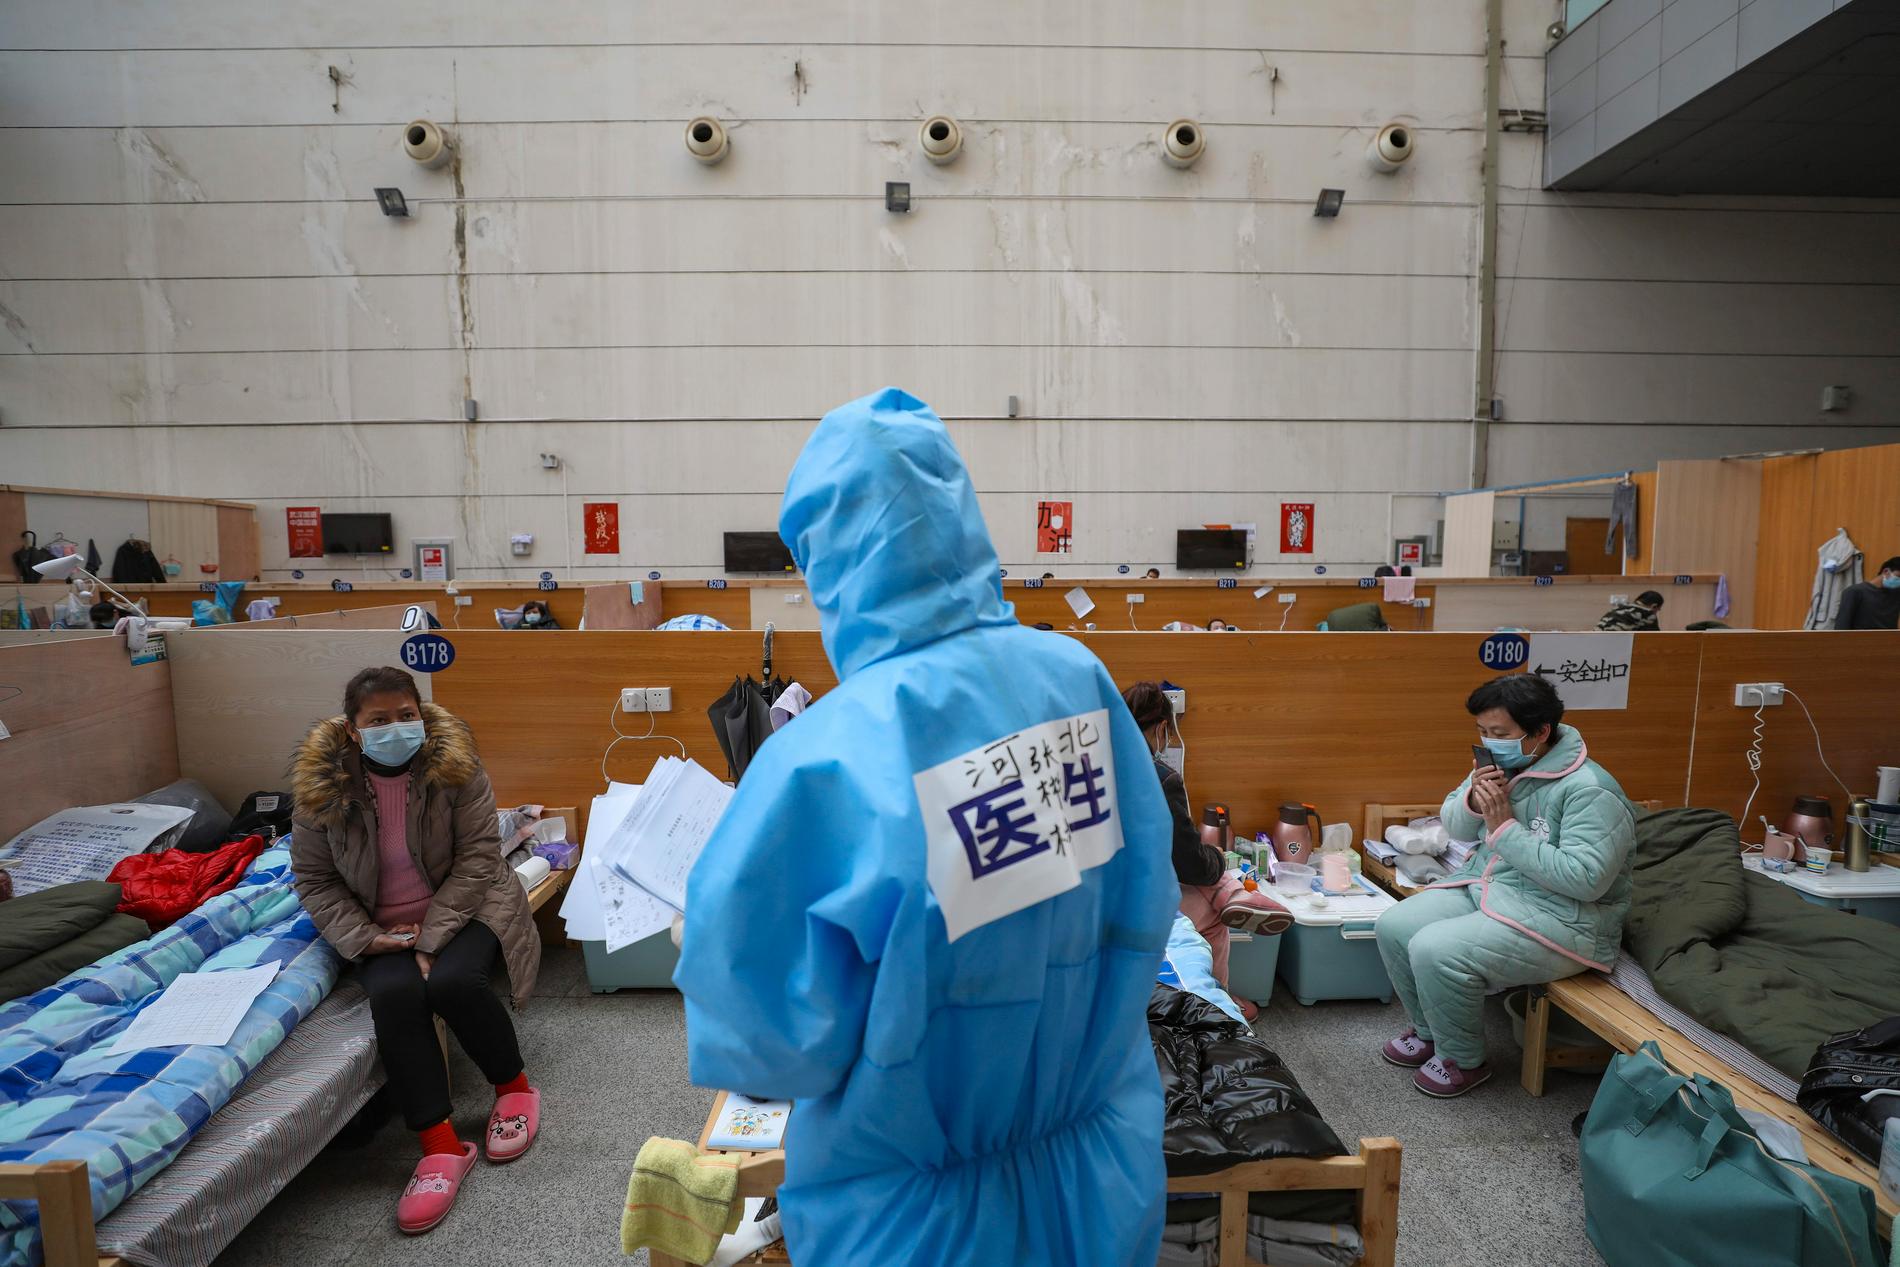 En läkare kontrollerar patienter på ett provisoriskt sjukhus i Wuhan i Kina. Bild tagen 21 februari.